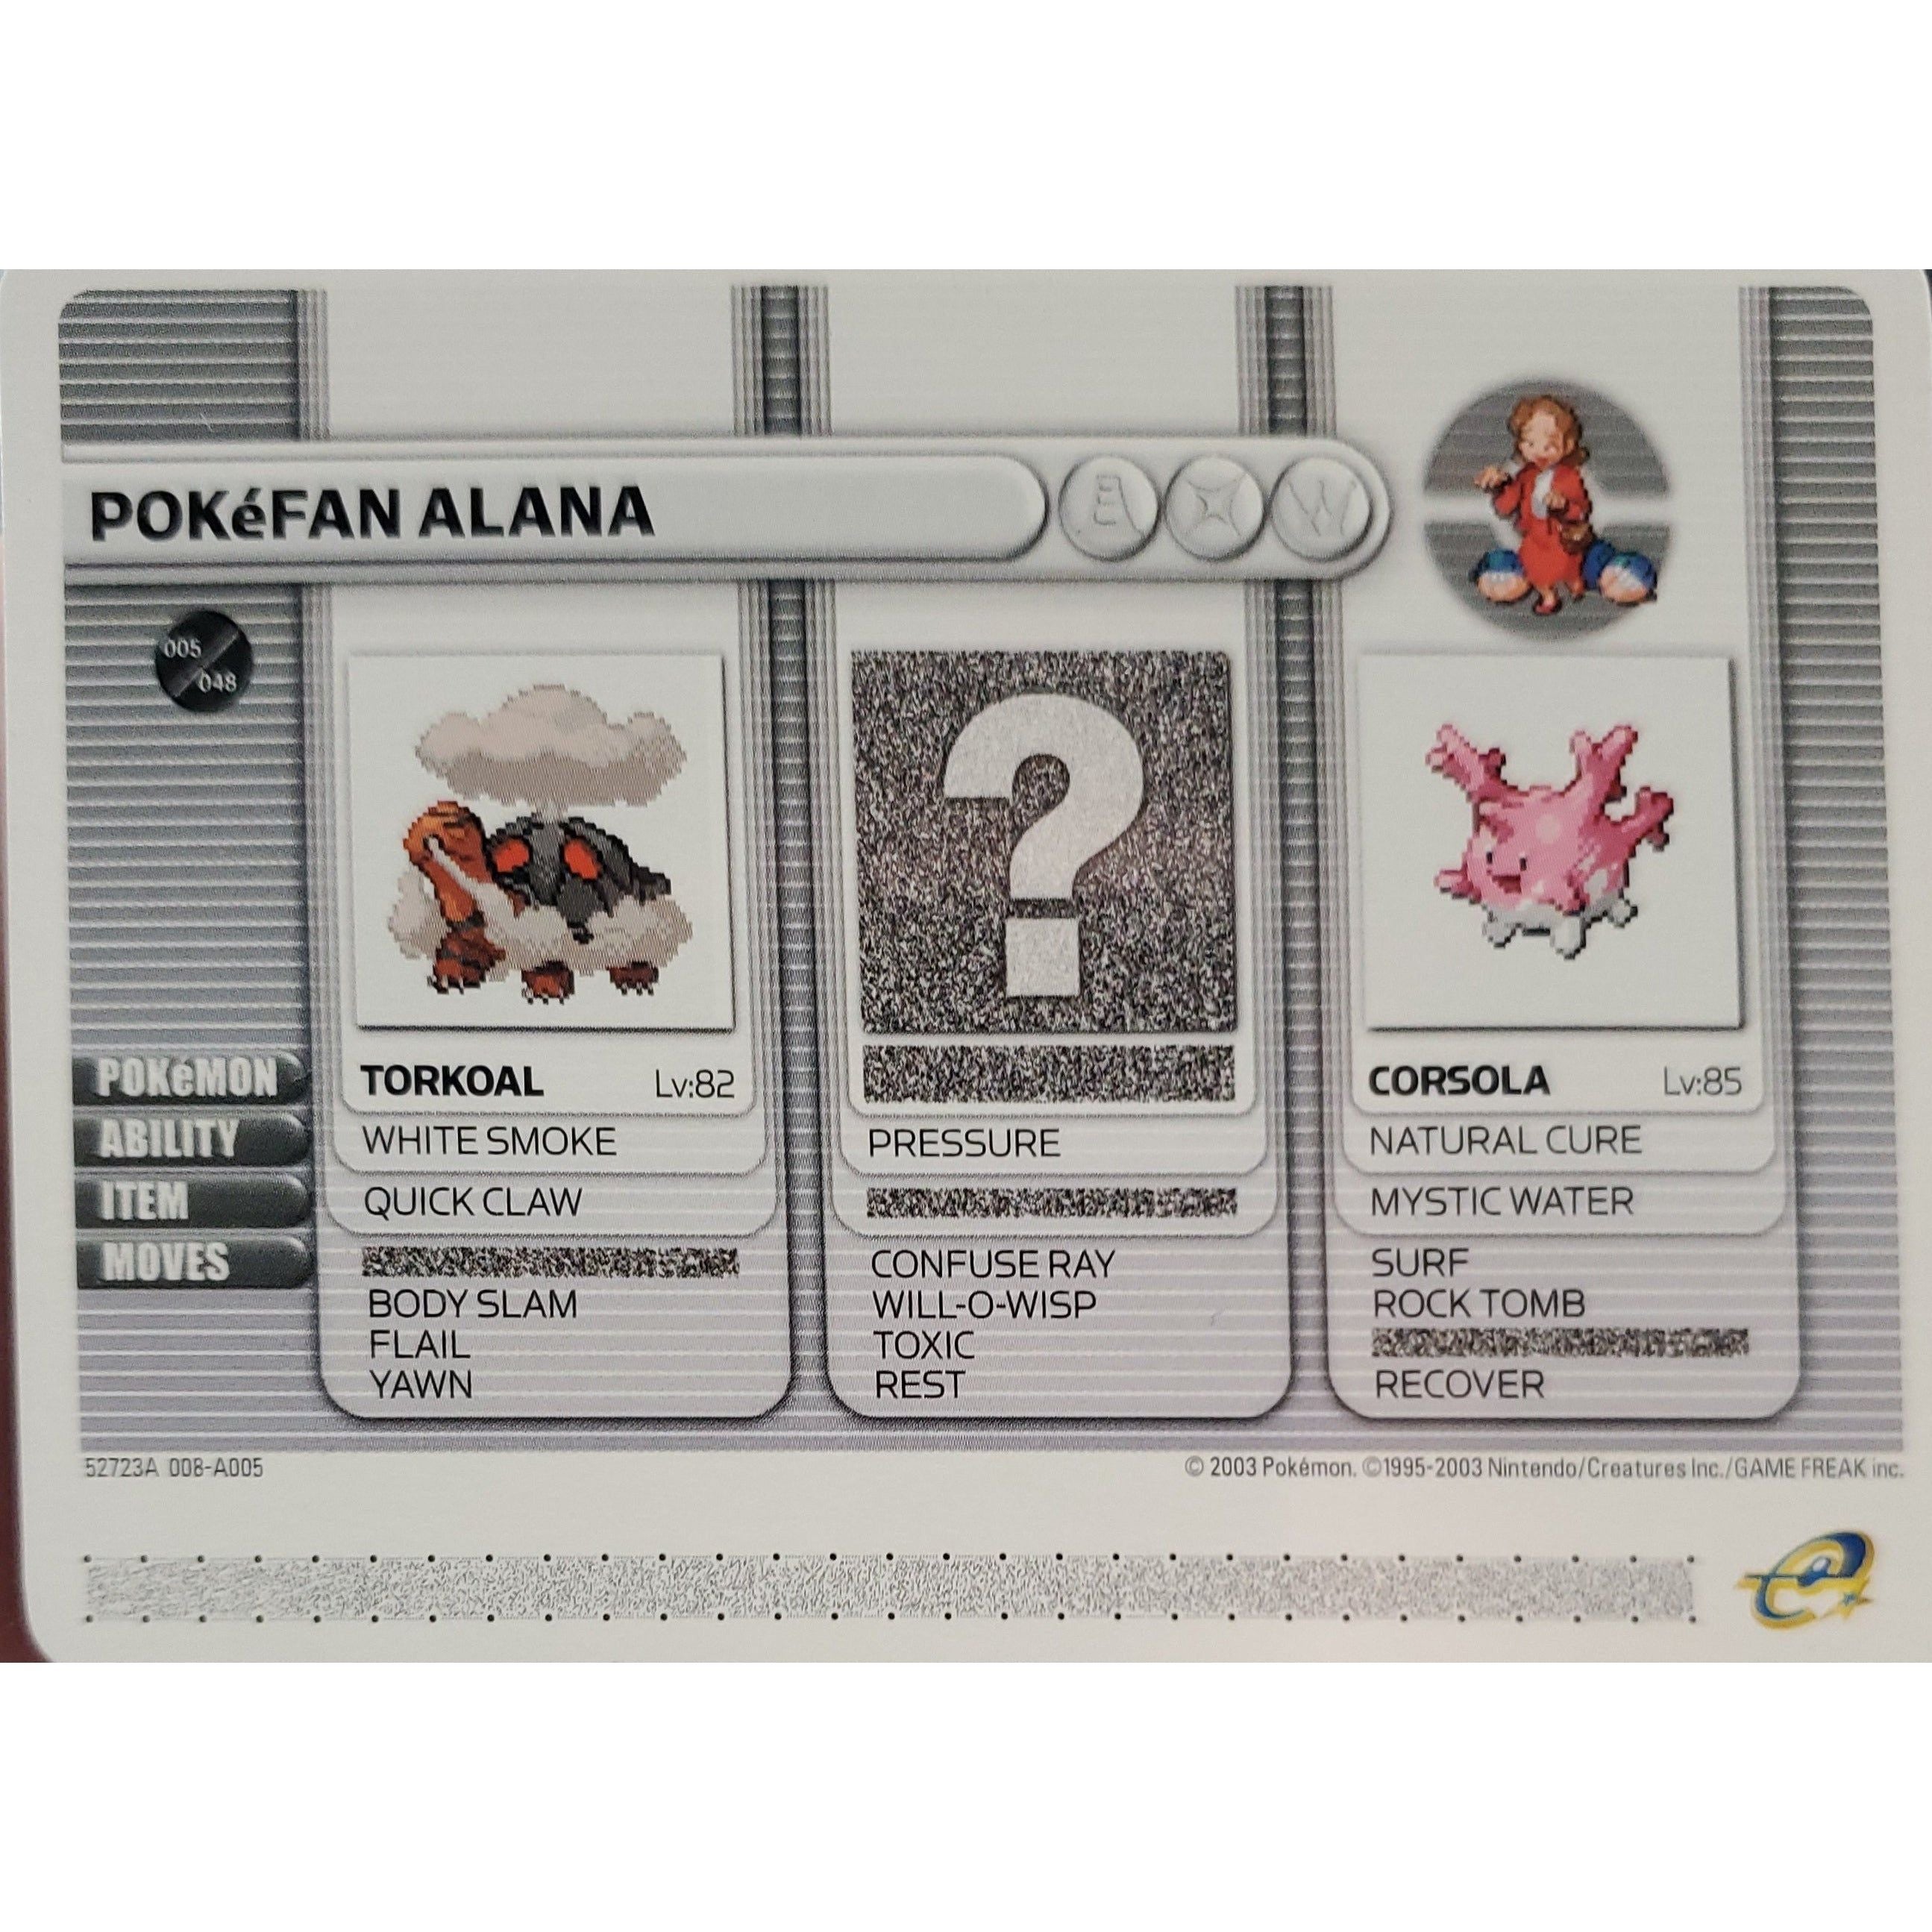 GBA - Pokemon Battle Card - Pokefan Alana